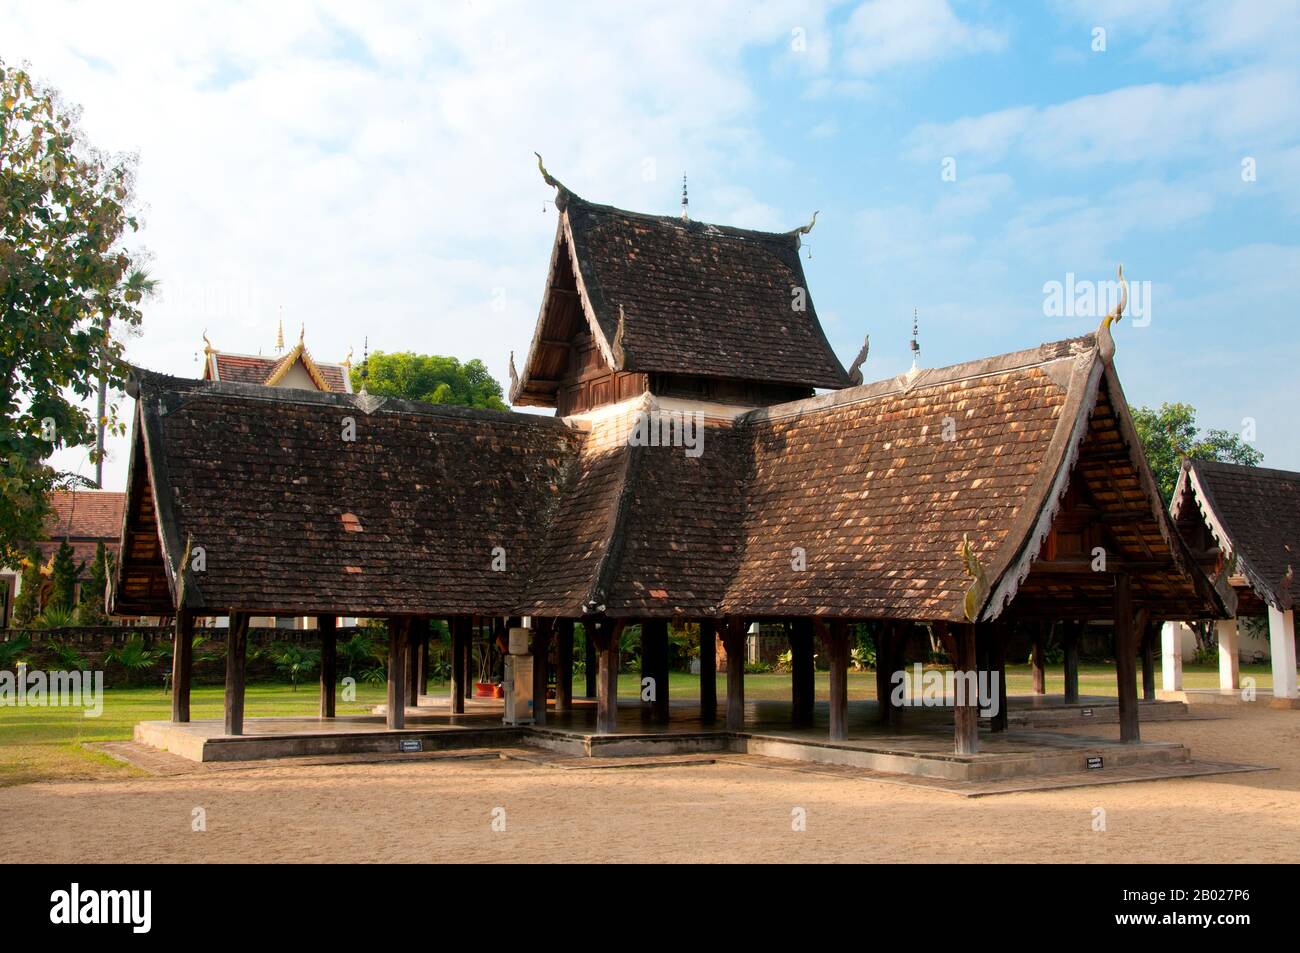 Wat ton Kwen (วัด ต้น เกว๋น), plus officiellement connu sous le nom de Wat  Inthrawat (วัด อินทราวาส), signifie «Temple of Sugar Palms» à kham muang ou  dans le nord de la Thaïlande,